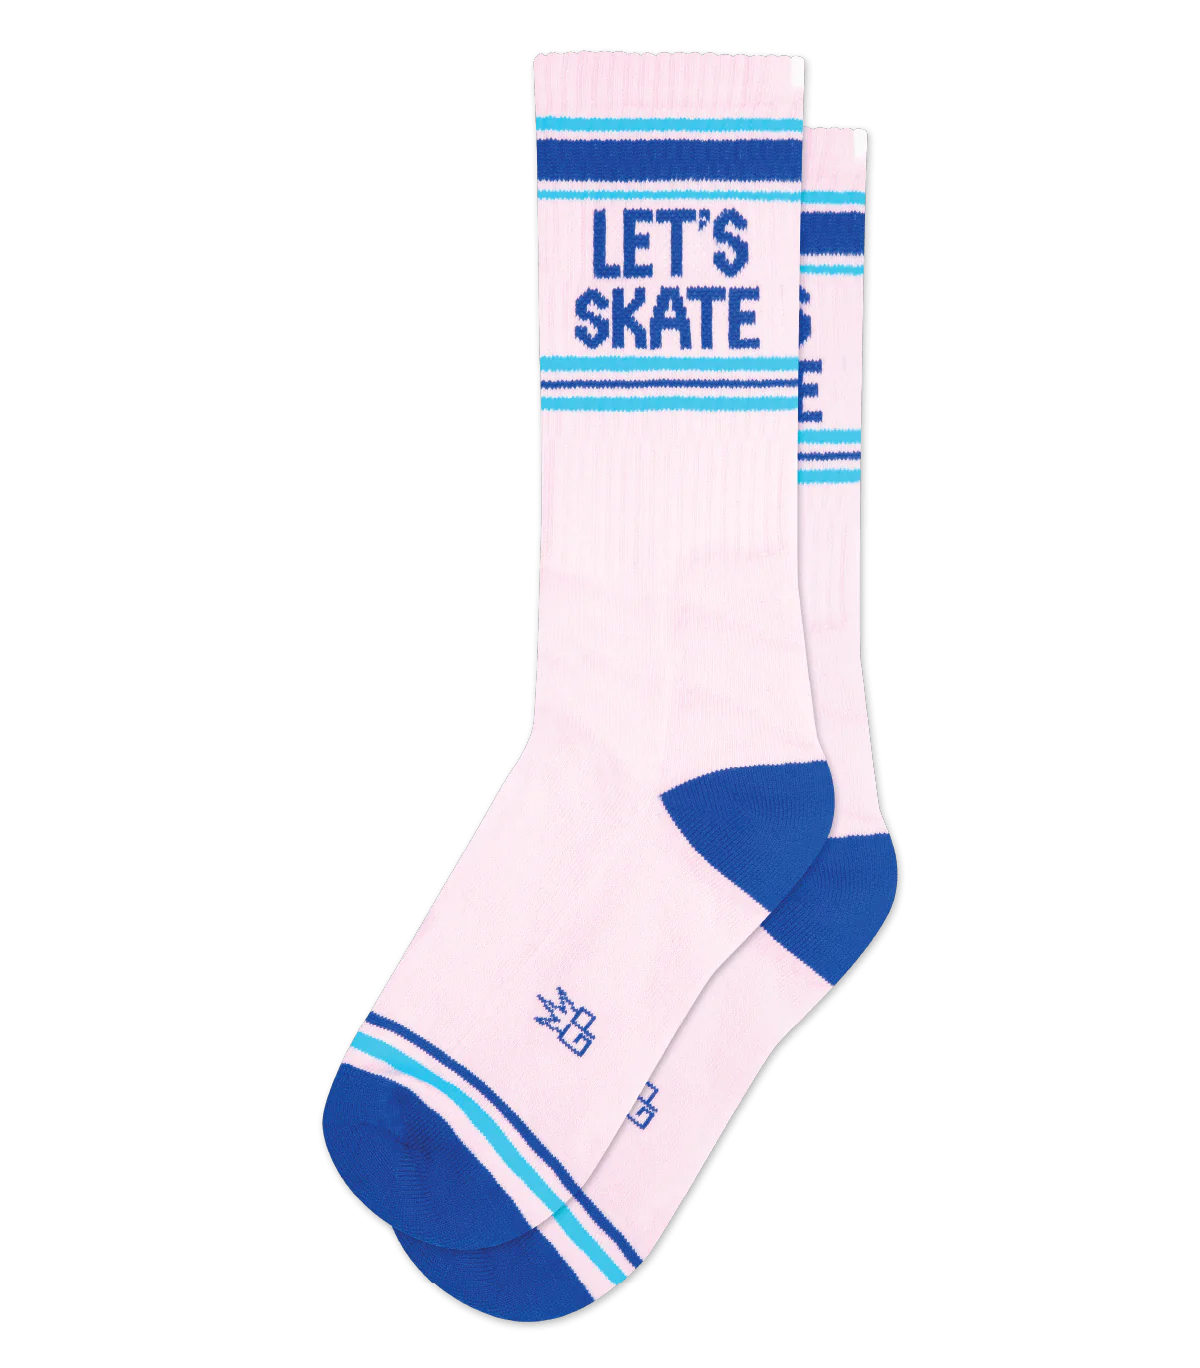 Let's Skate Socks